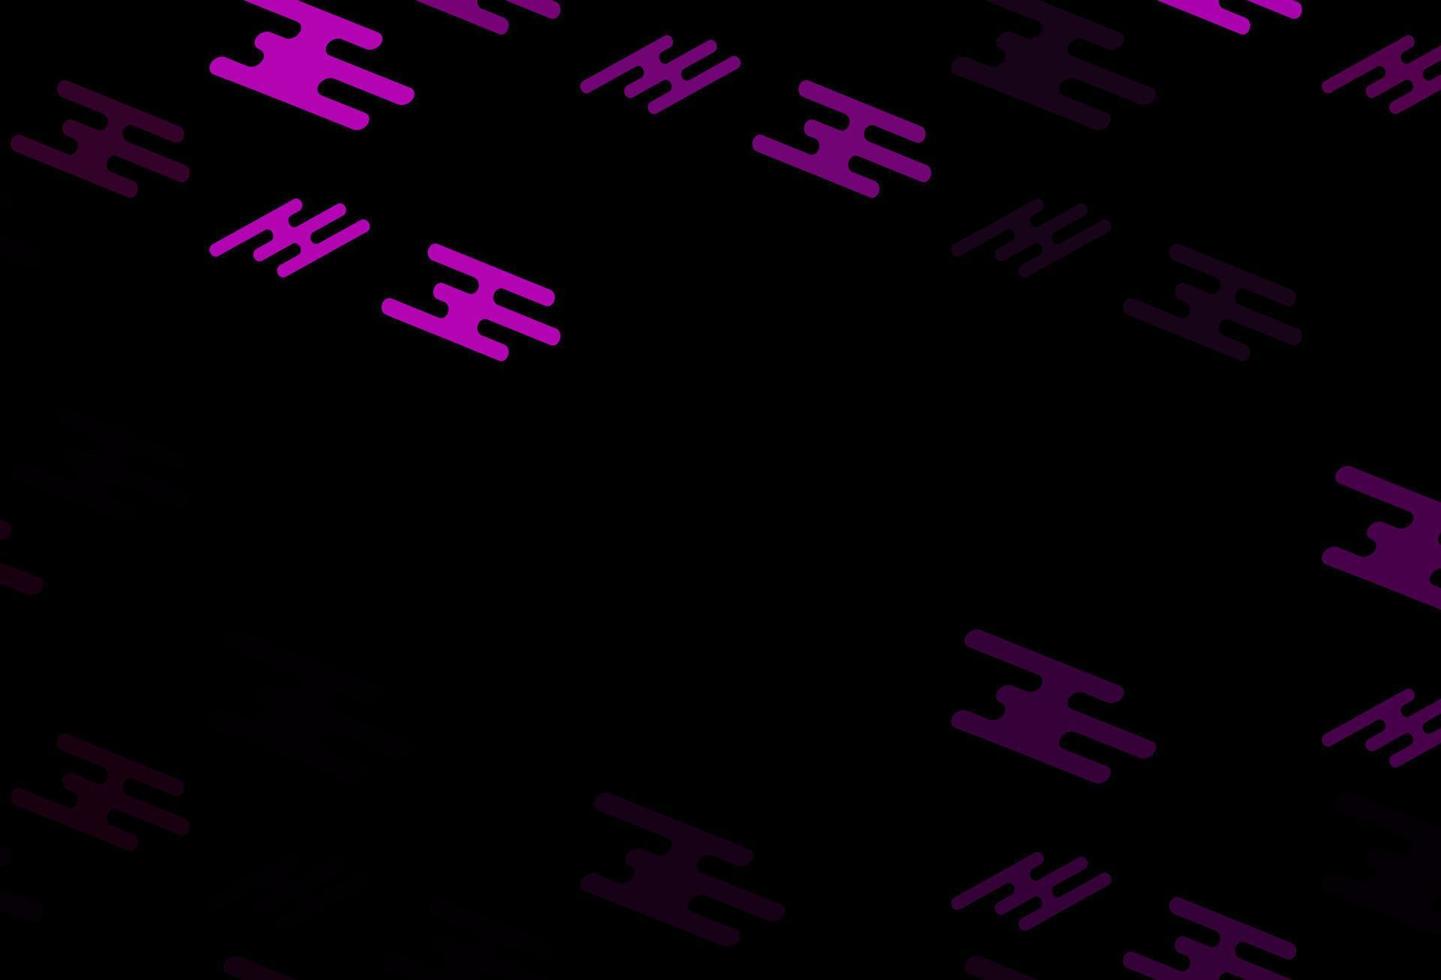 Telón de fondo de vector púrpura oscuro con líneas largas.